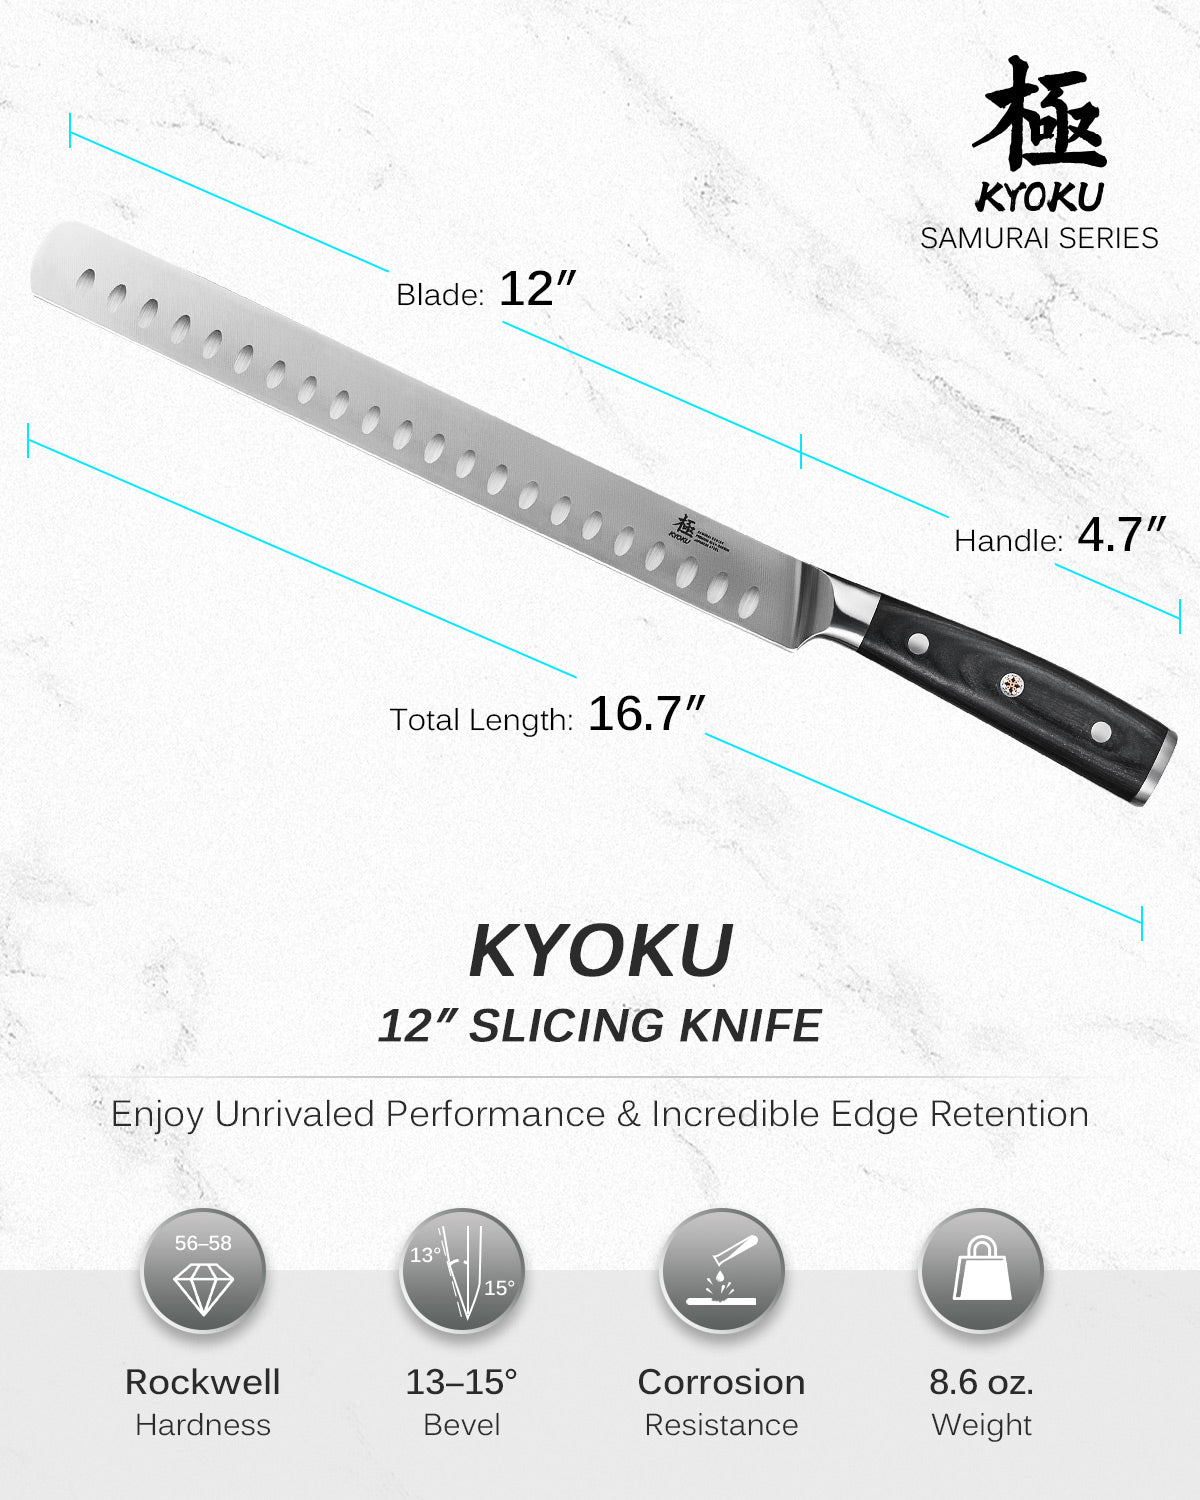 https://kyokuknives.com/cdn/shop/files/12--Slicing-Knife---Samurai-Series-Kyoku-Knives-1697013991876.jpg?v=1697616332